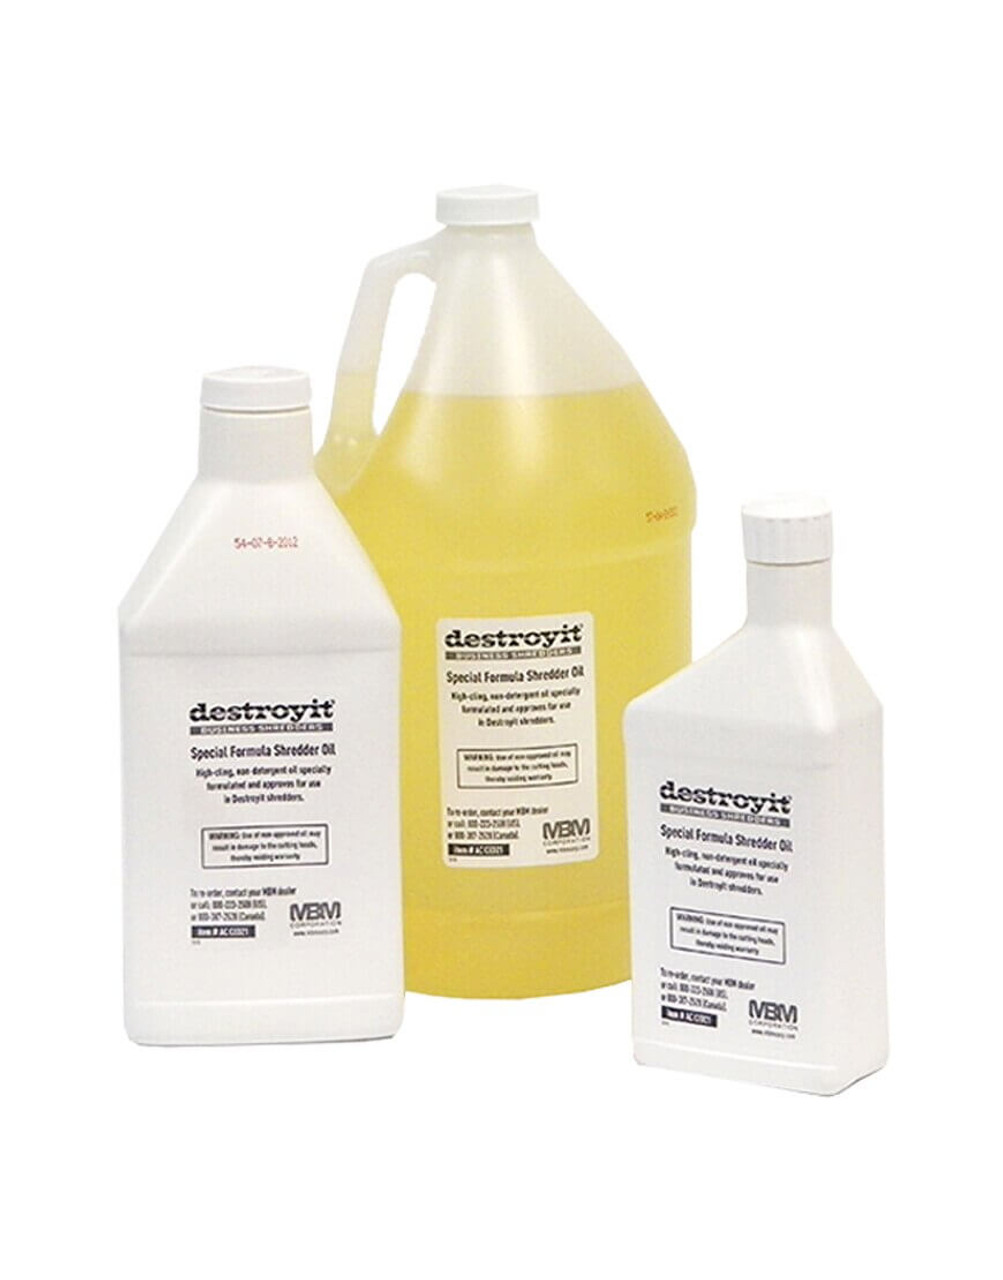 MBM ACCED21/6 DestroyIt Shredder Oil - 1 Quart Bottle (6pk) 